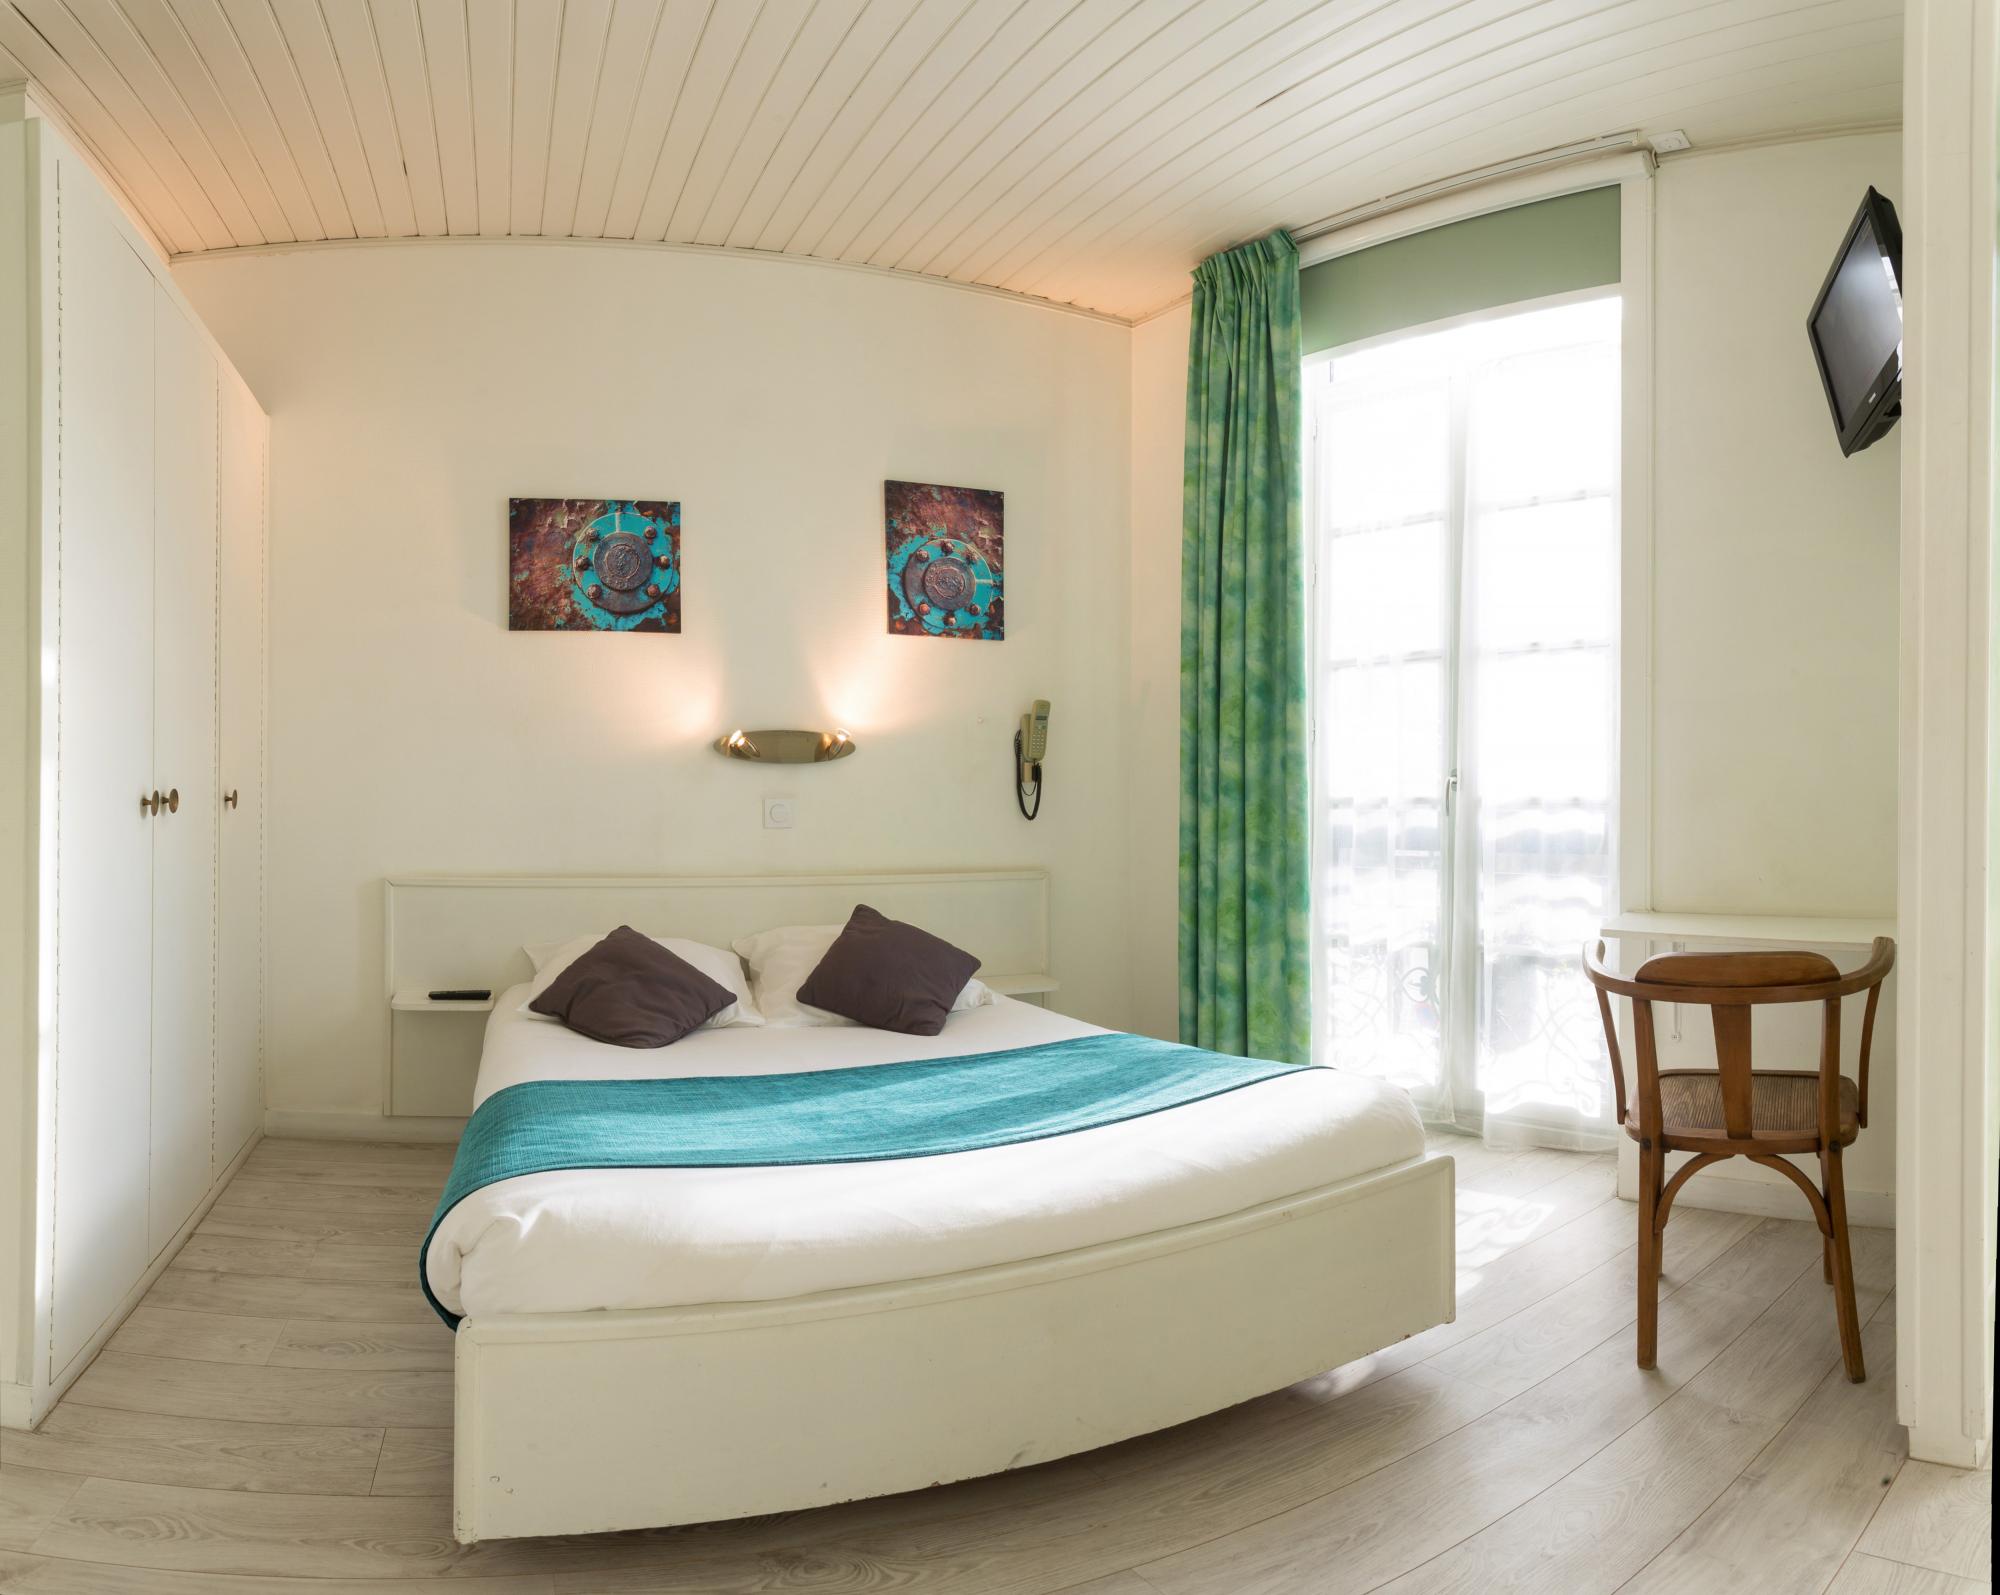 Tarifs chambres d'hôtel en centre ville de La Rochelle - Hôtel de Paris **